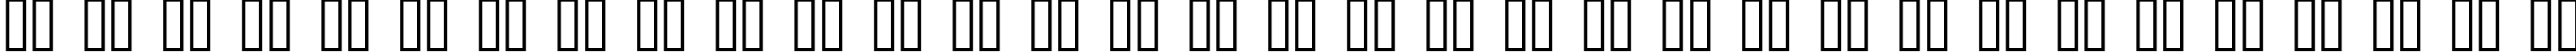 Пример написания русского алфавита шрифтом Pecot Outline Bold